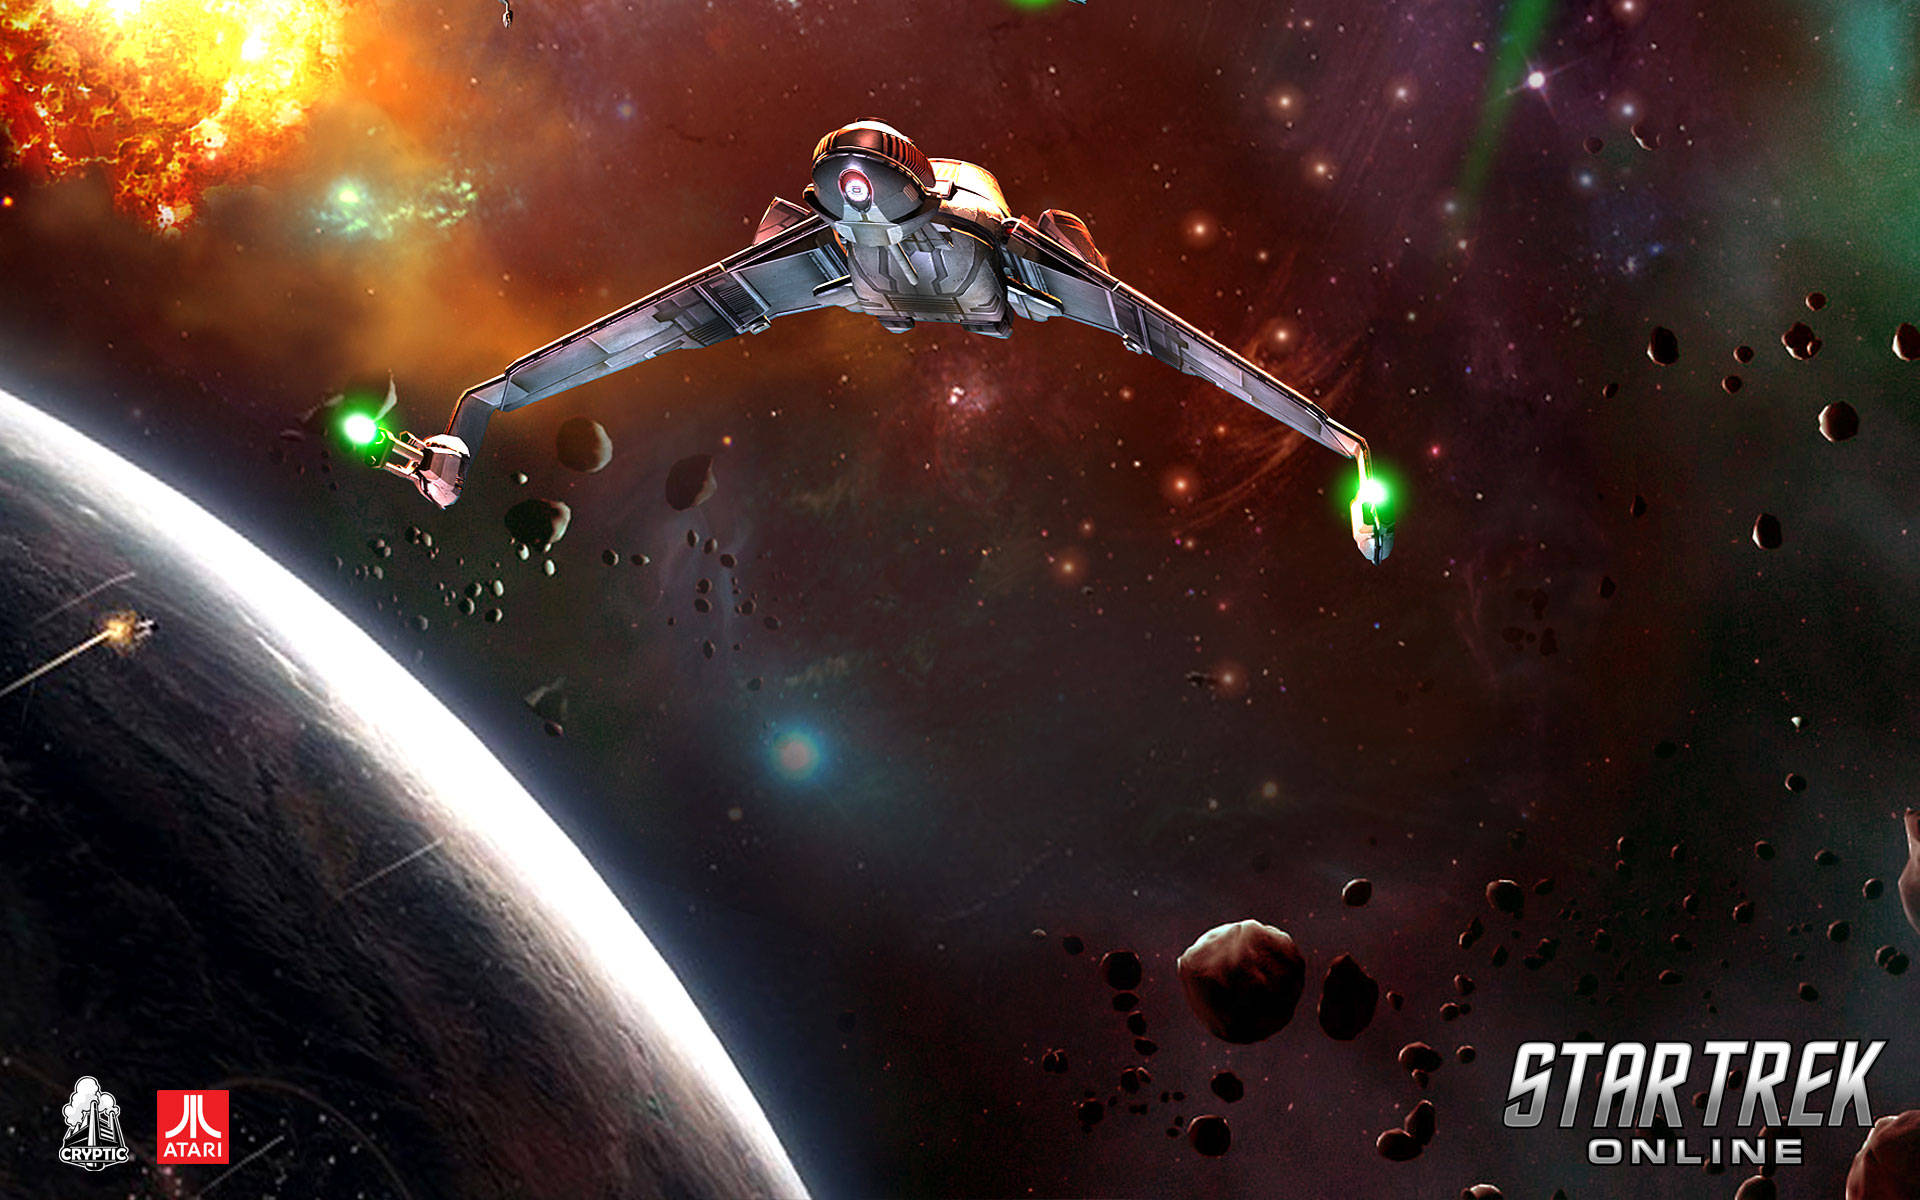 Star Trek Starship In Space Star Trek Online Wallpaper